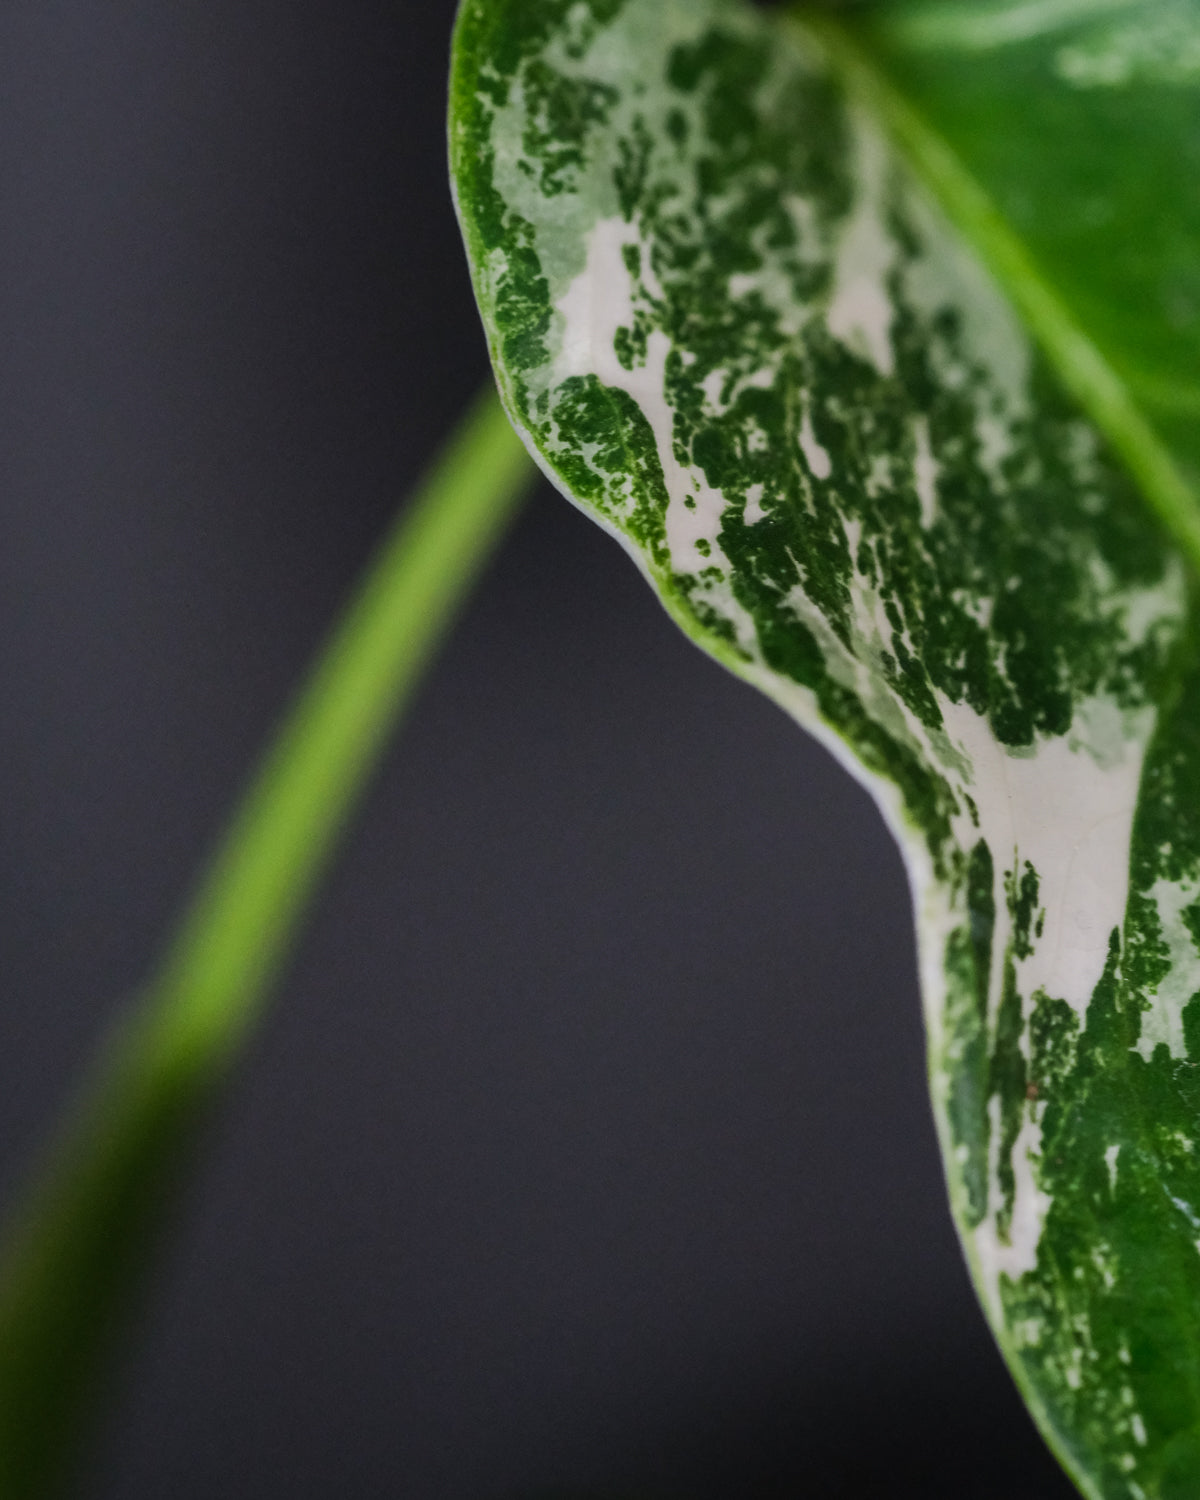 Detailansicht der grün-weissen Musterung eines Blatts der Monstera variegata